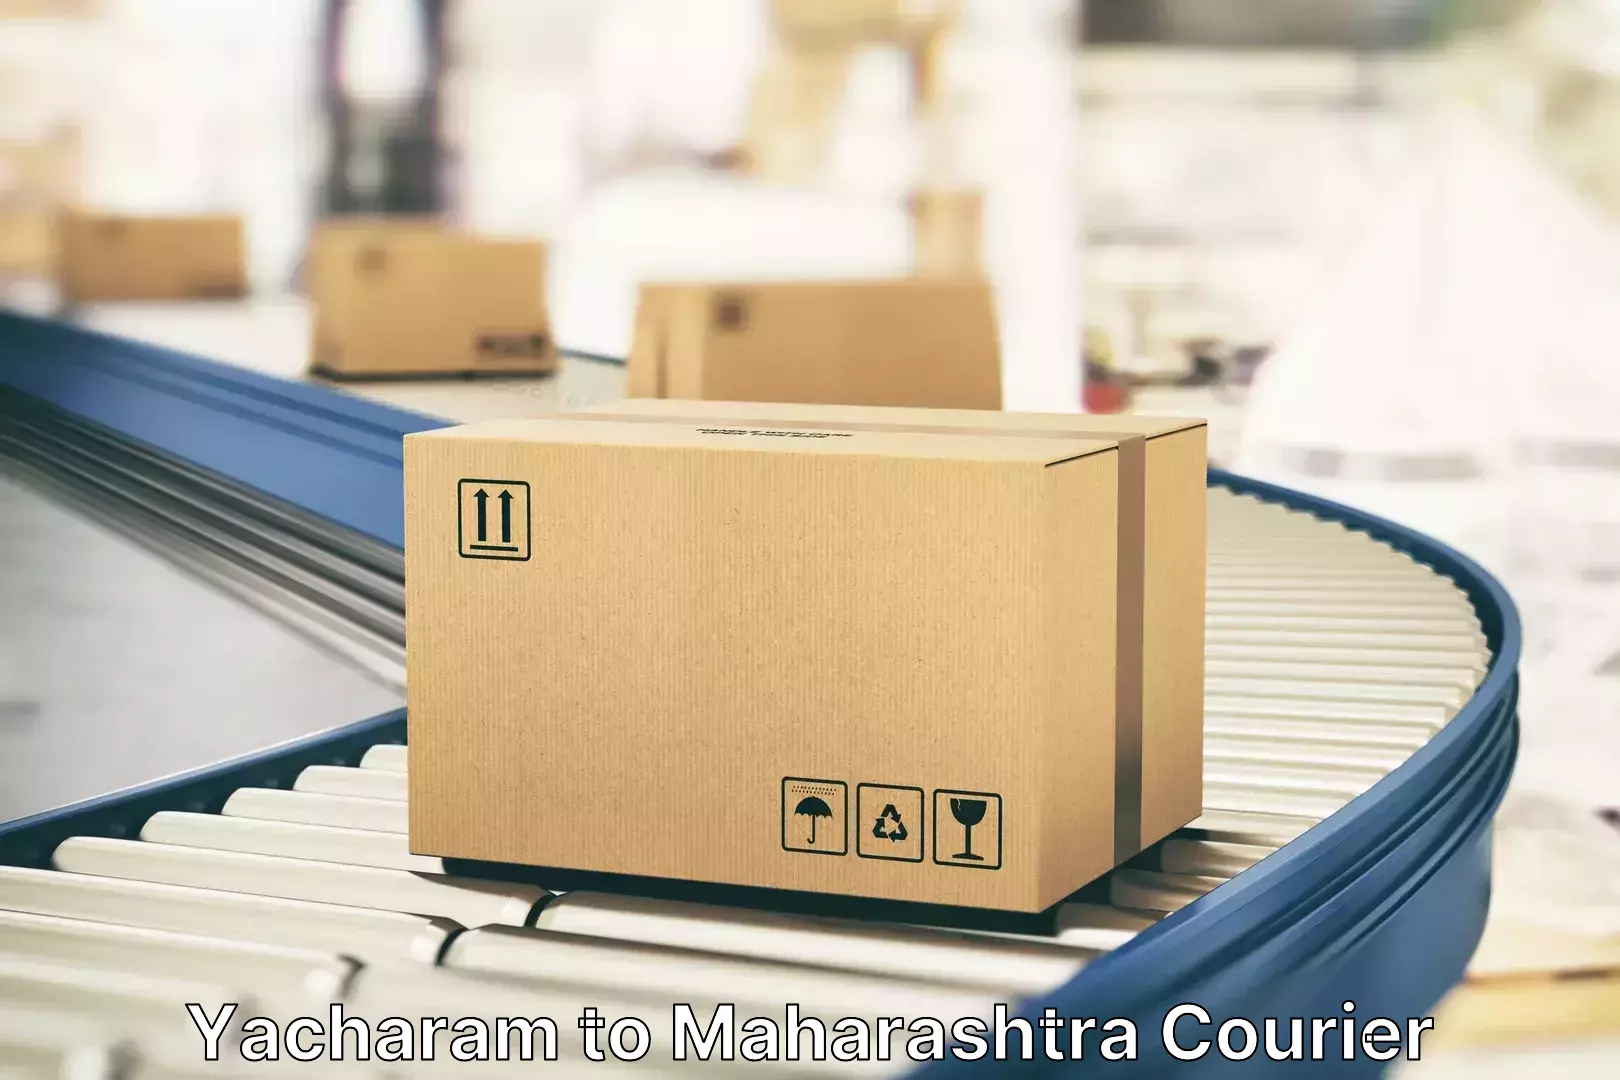 Luggage transport service Yacharam to Maharashtra